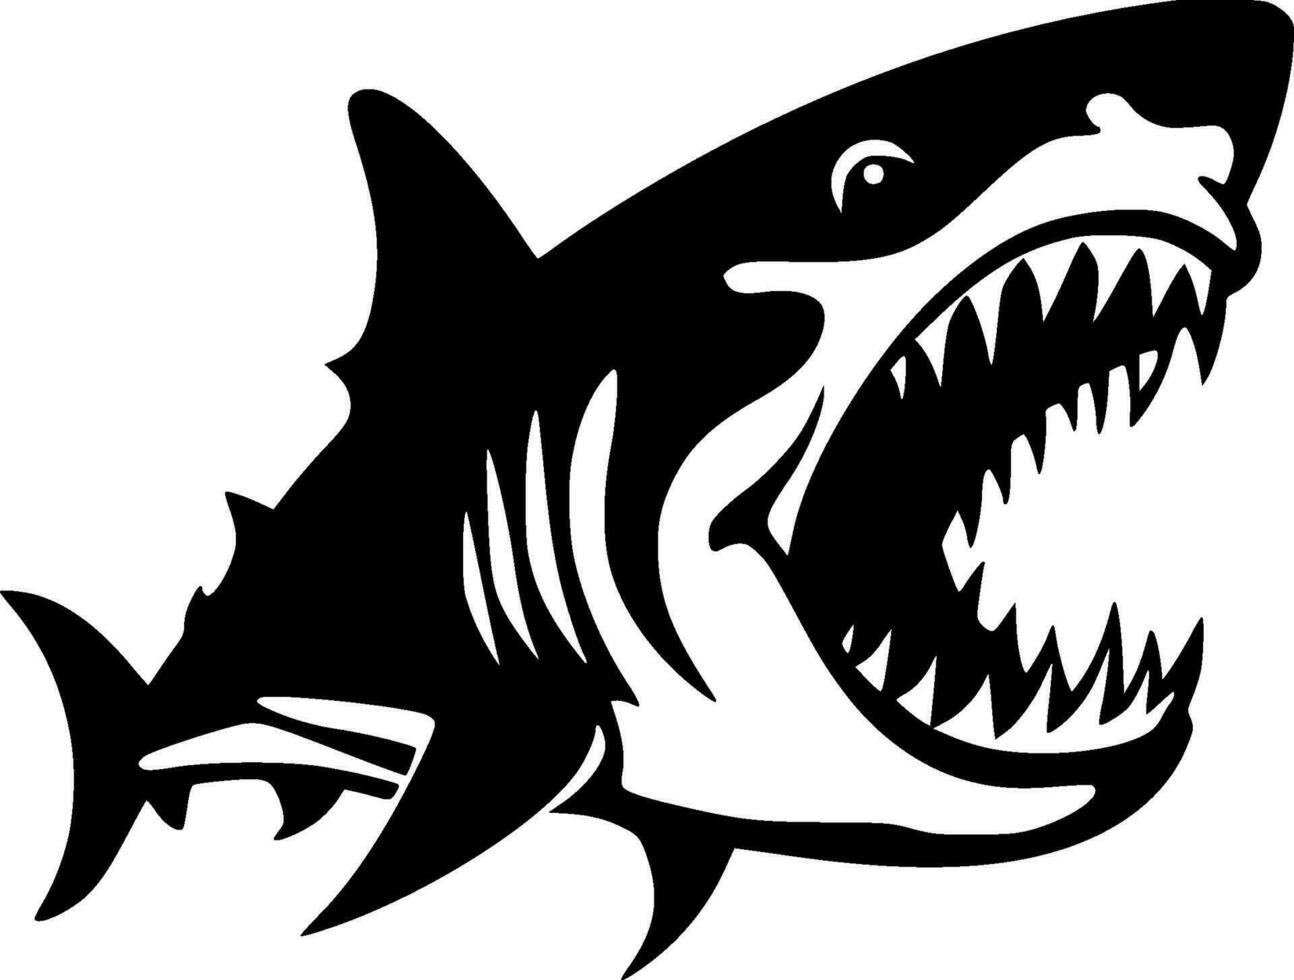 haj - hög kvalitet vektor logotyp - vektor illustration idealisk för t-shirt grafisk